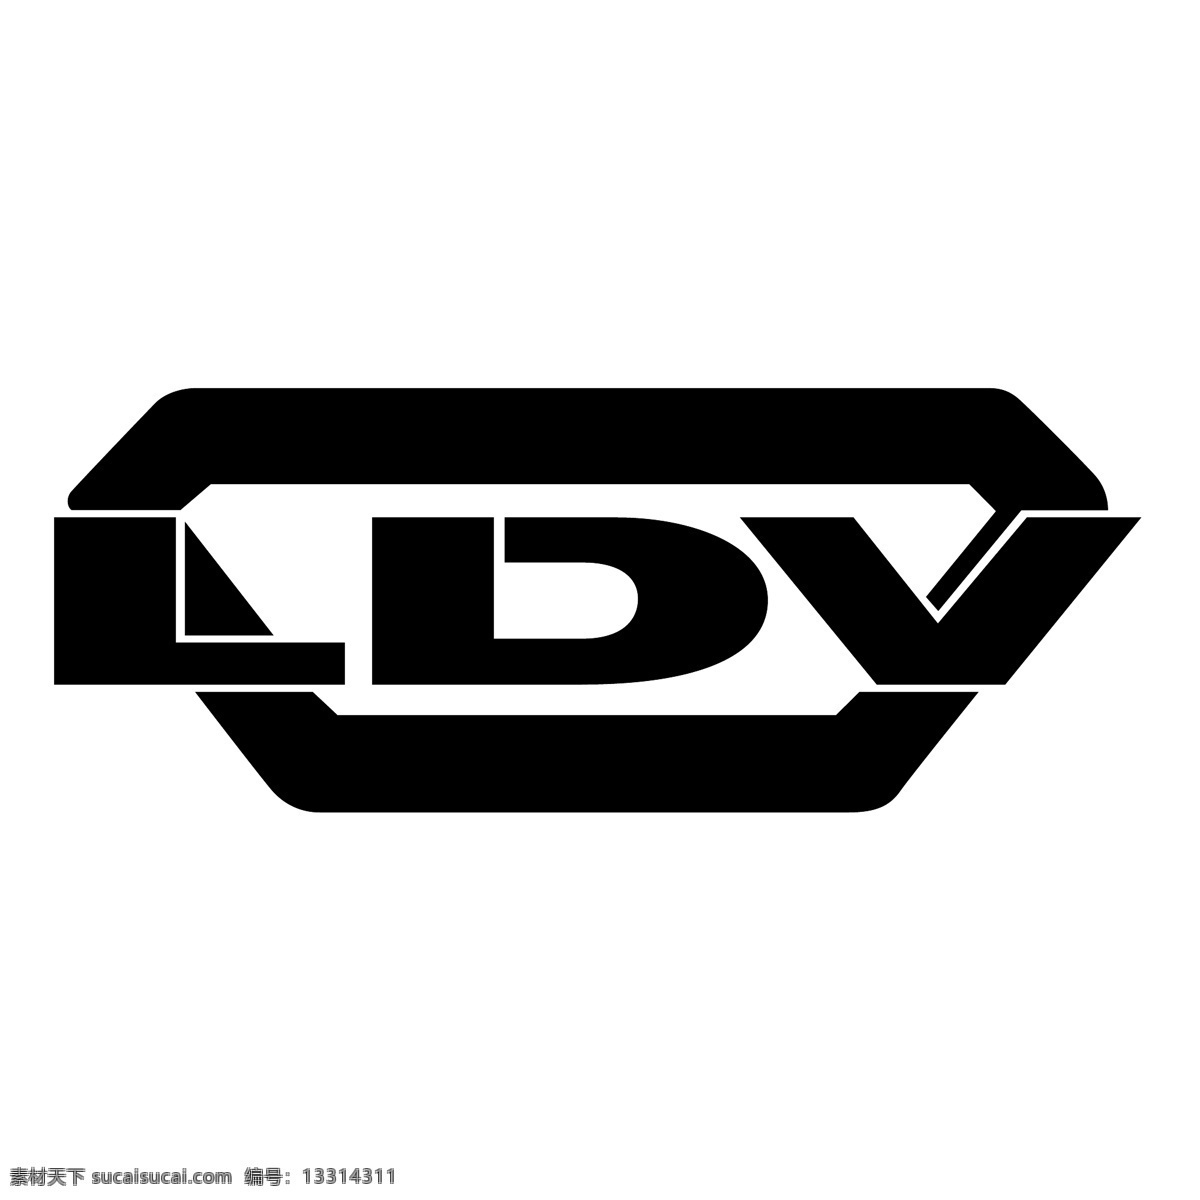 激光 多普勒 测速仪 免费 ldv 标识 psd源文件 logo设计